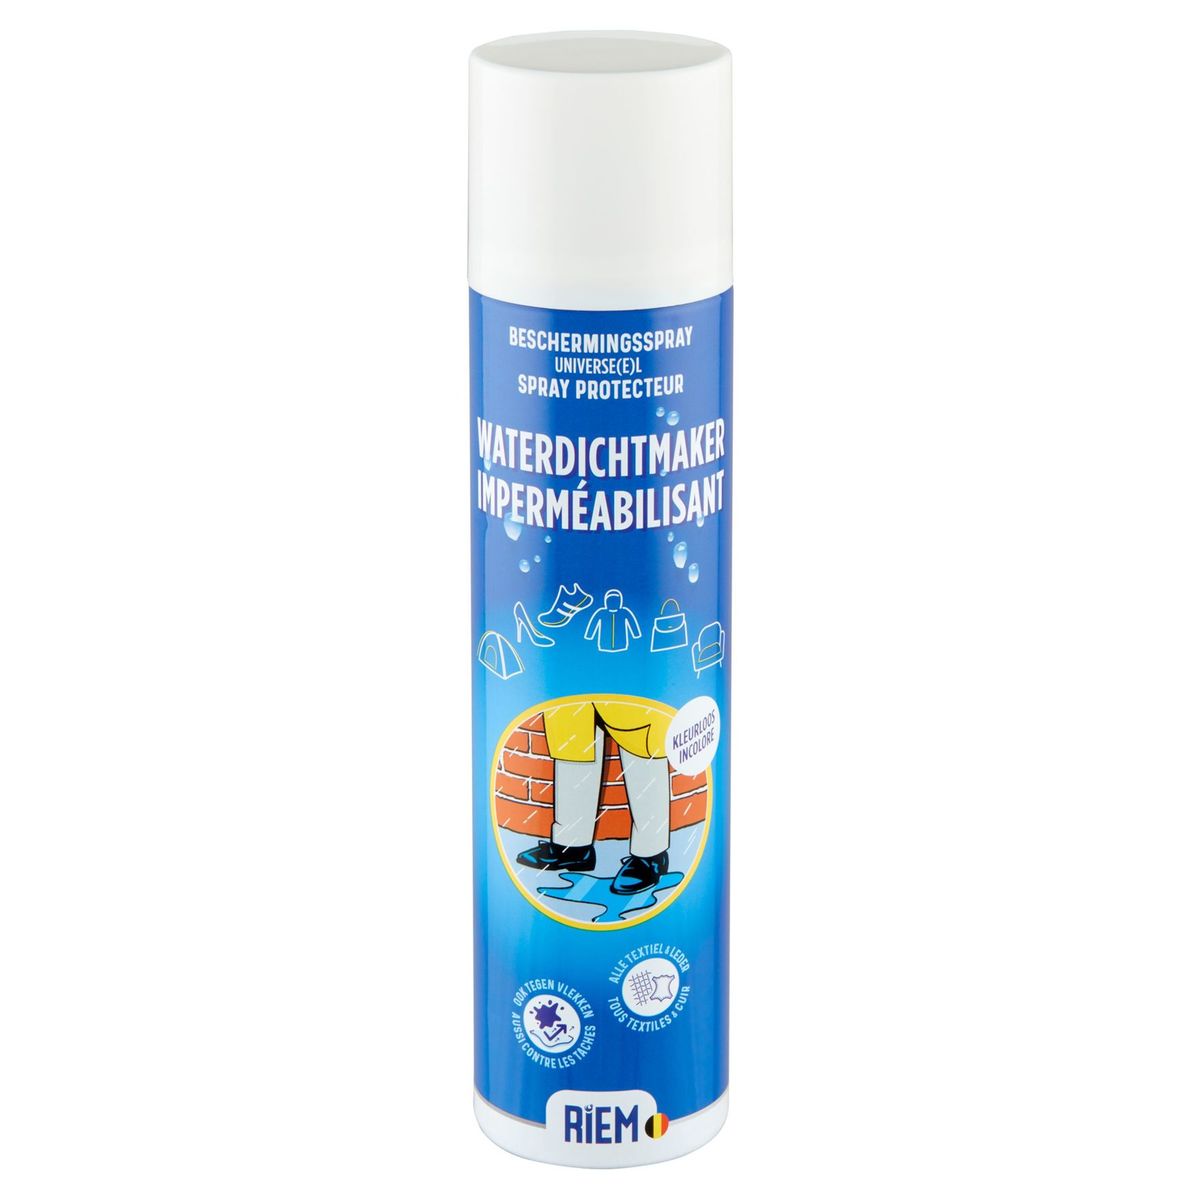 Riem Waterdichtmaker Universeel Beschermingsspray 400 ml